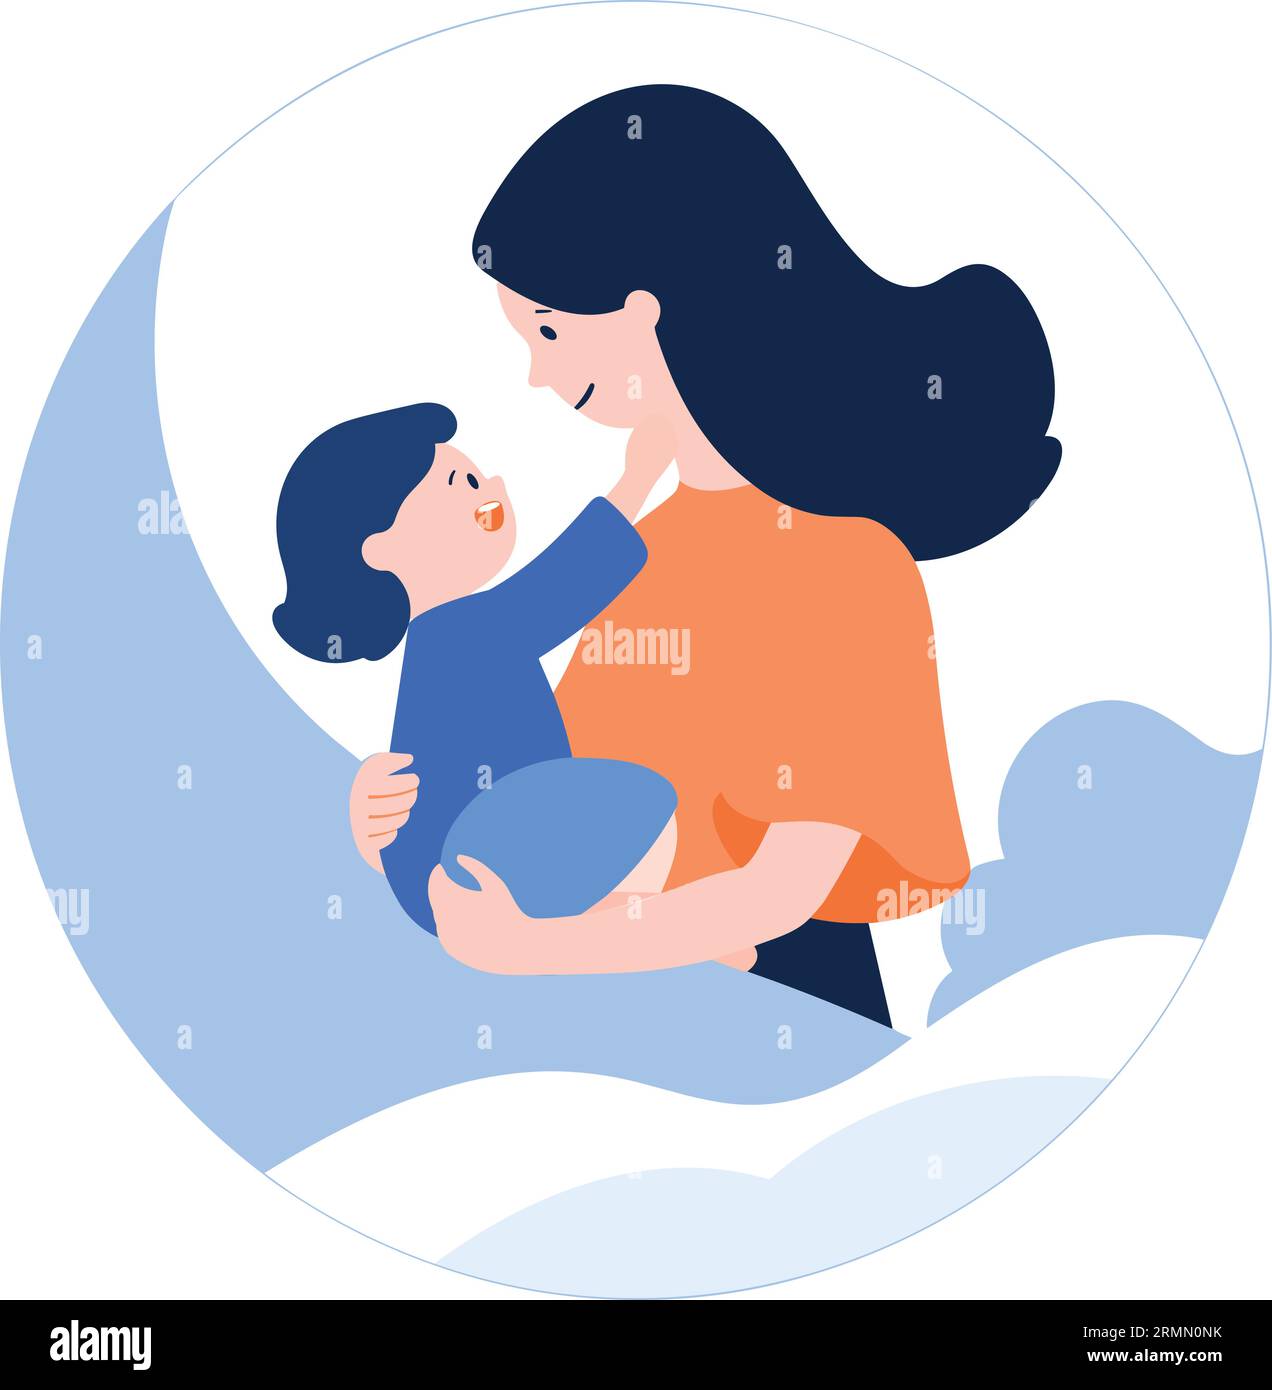 Mère dessinée à la main embrassant son enfant joyeusement dans un style plat isolé sur fond Illustration de Vecteur